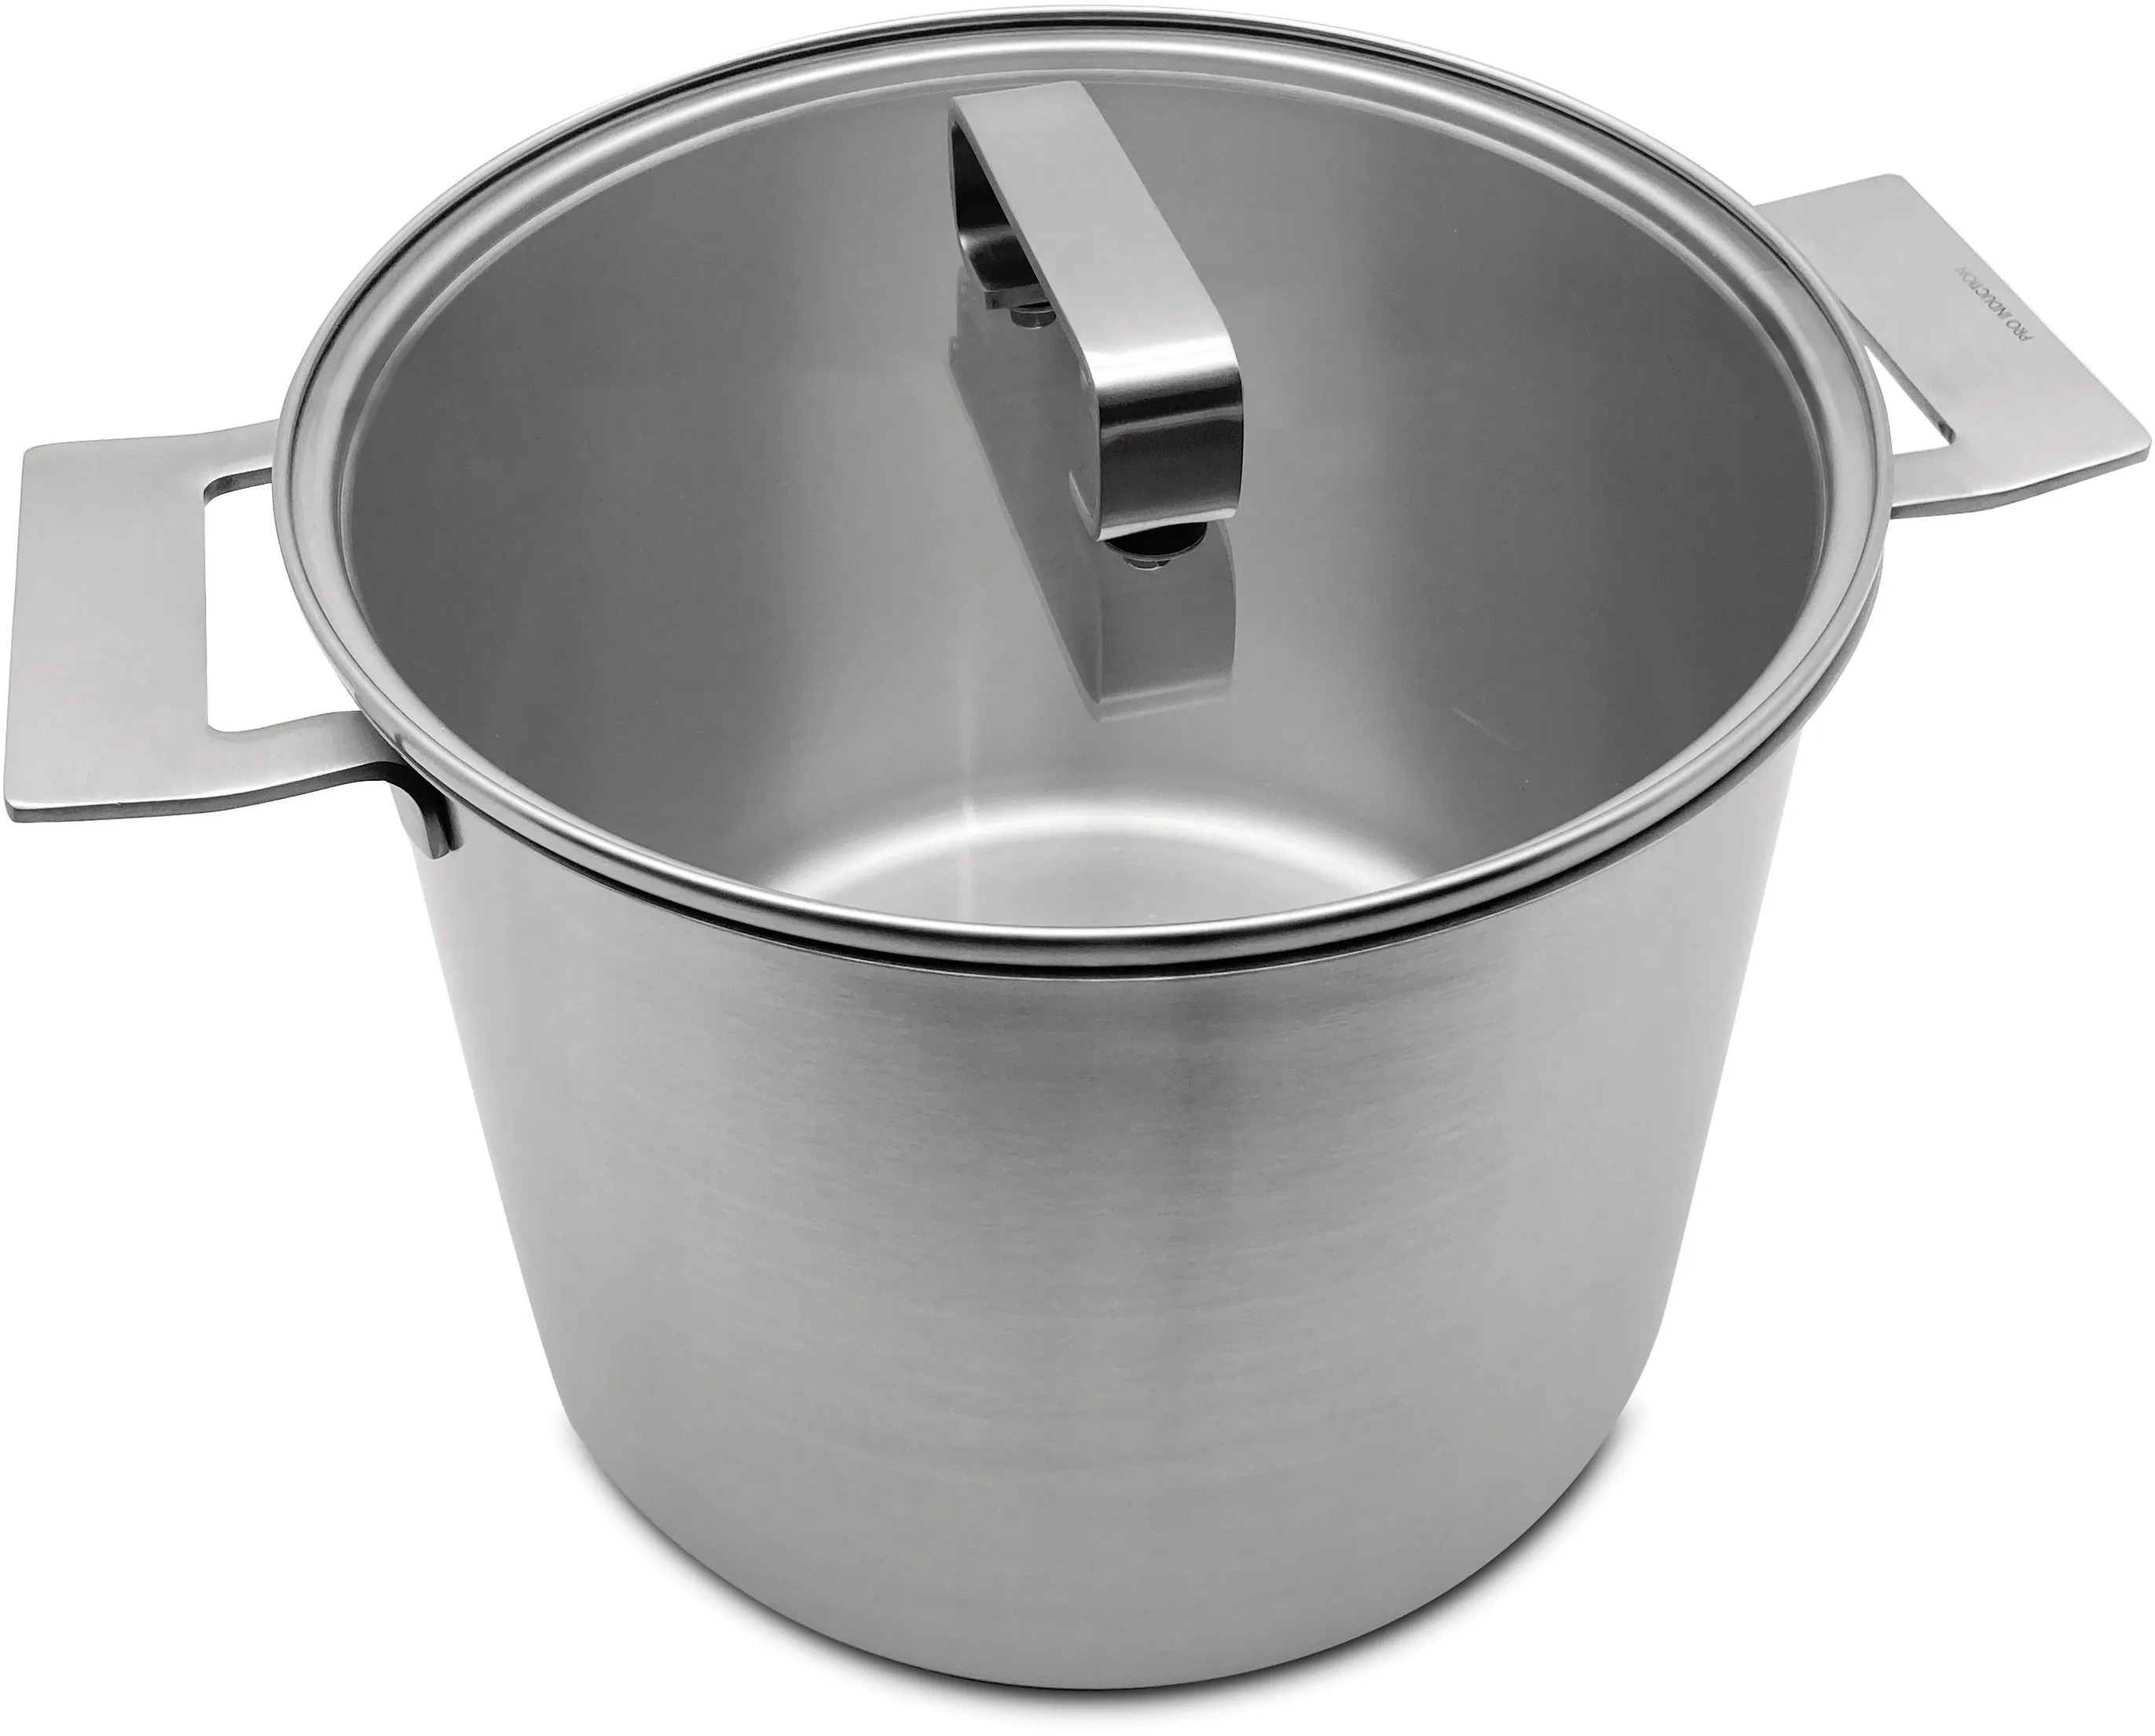  Pro Induction Large pot 24cm 